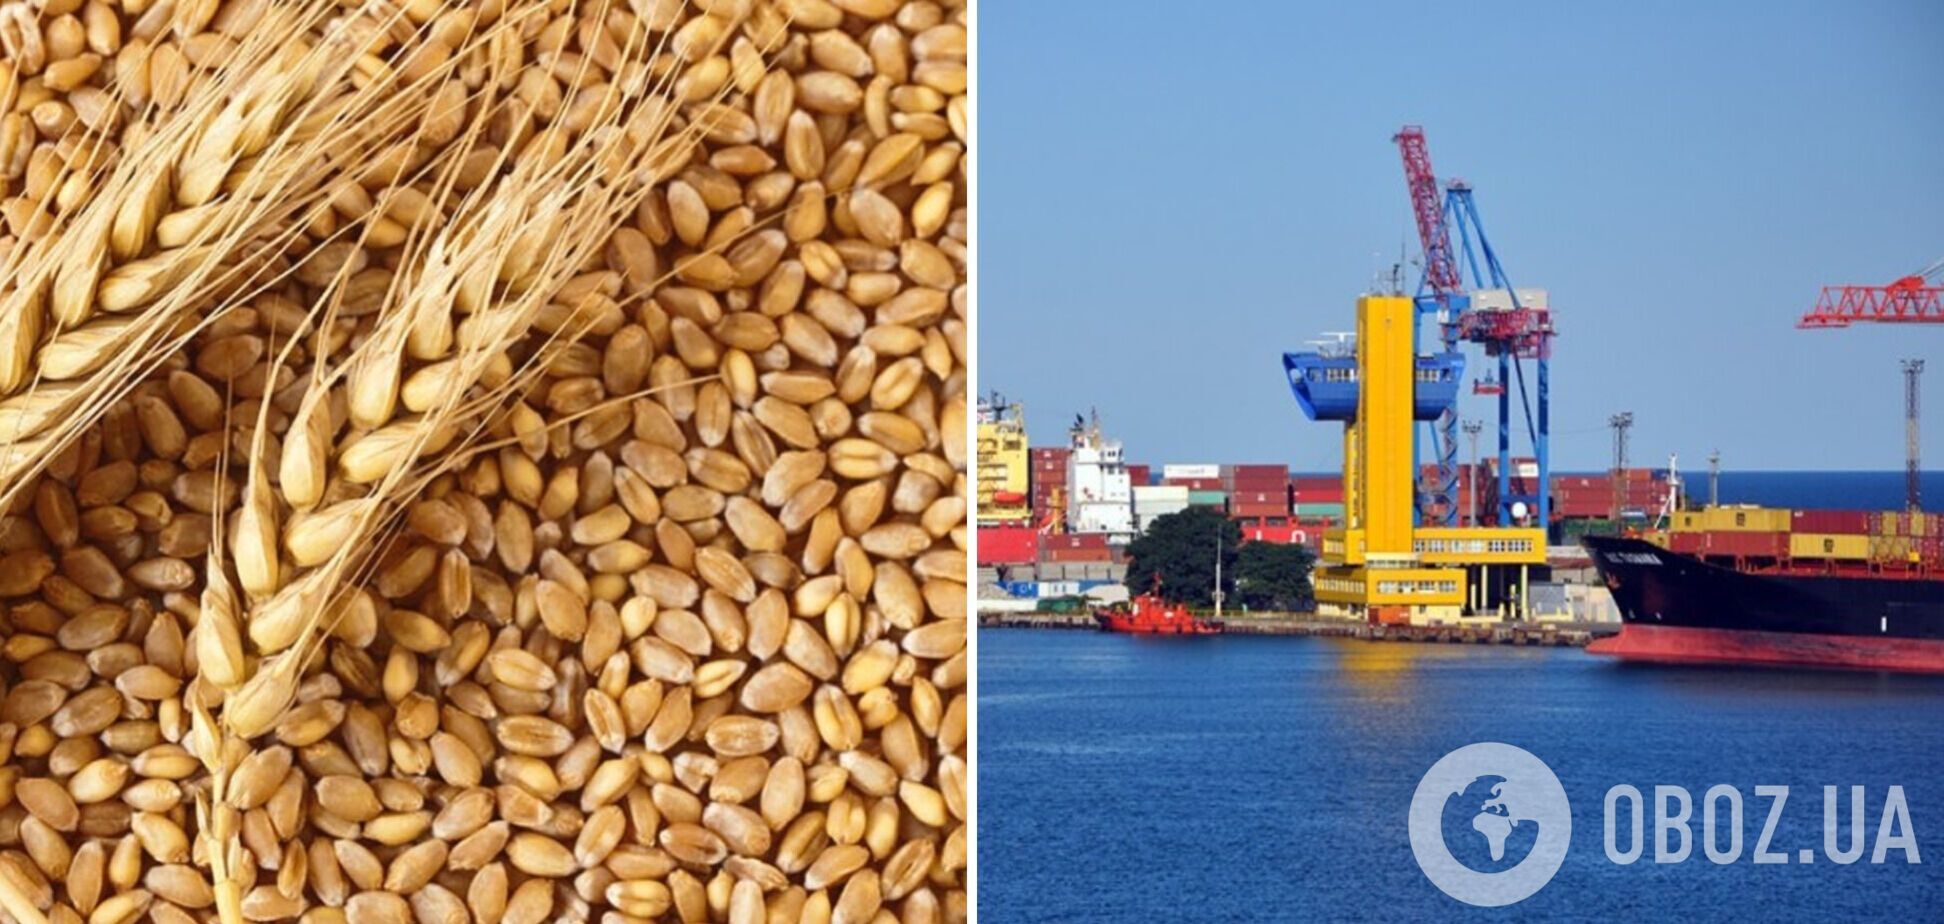 Коли розпочнеться експорт українського зерна